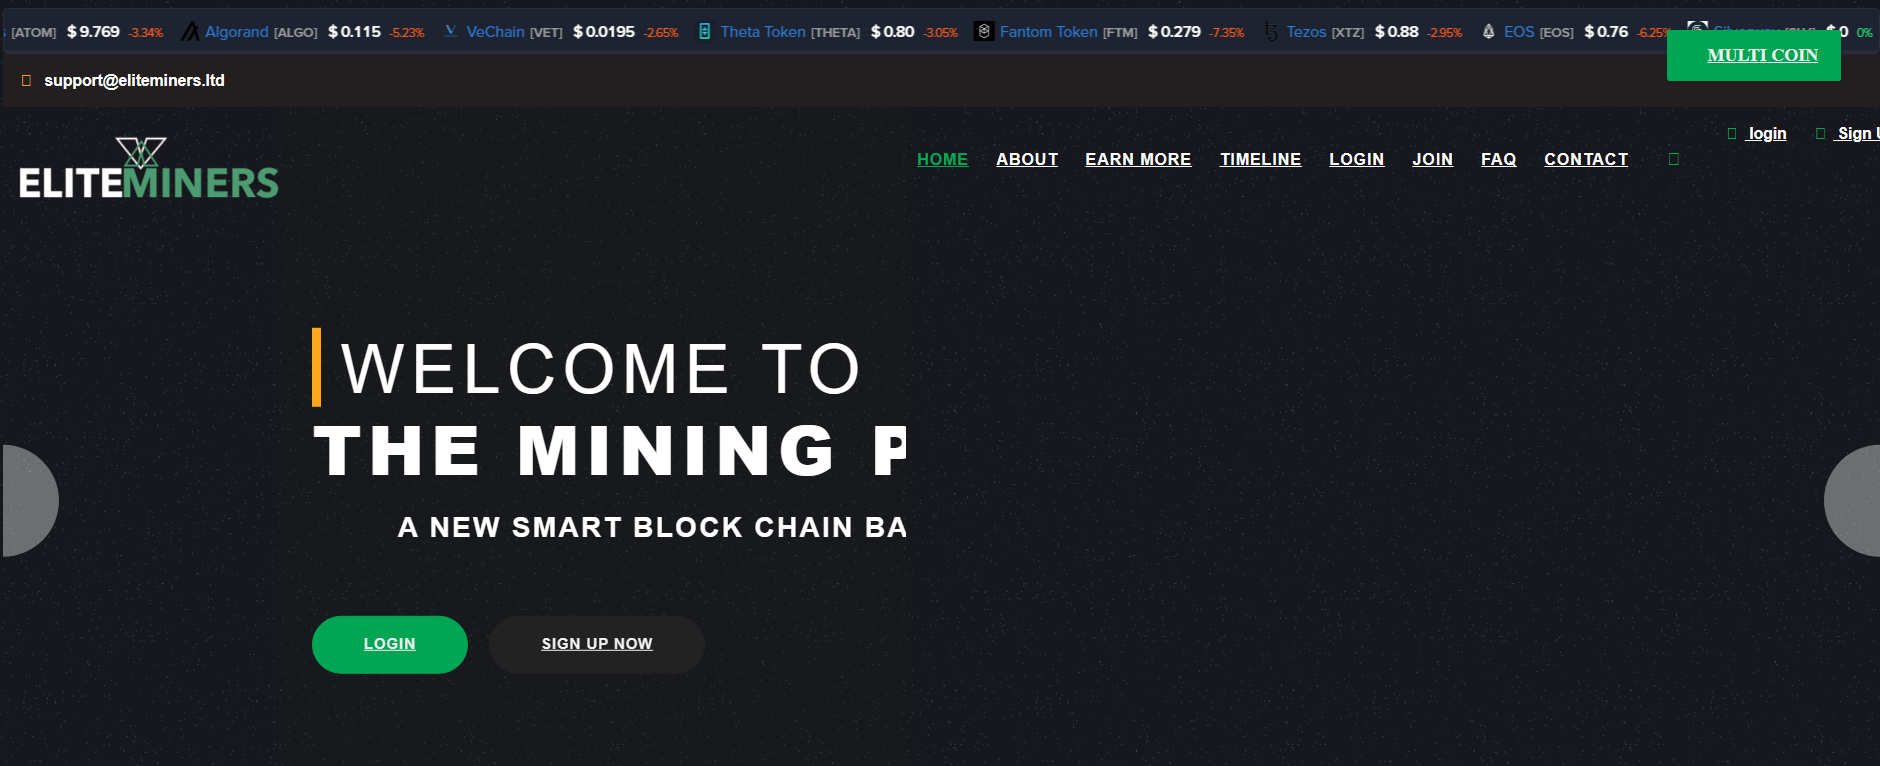 Eliteminers homepage